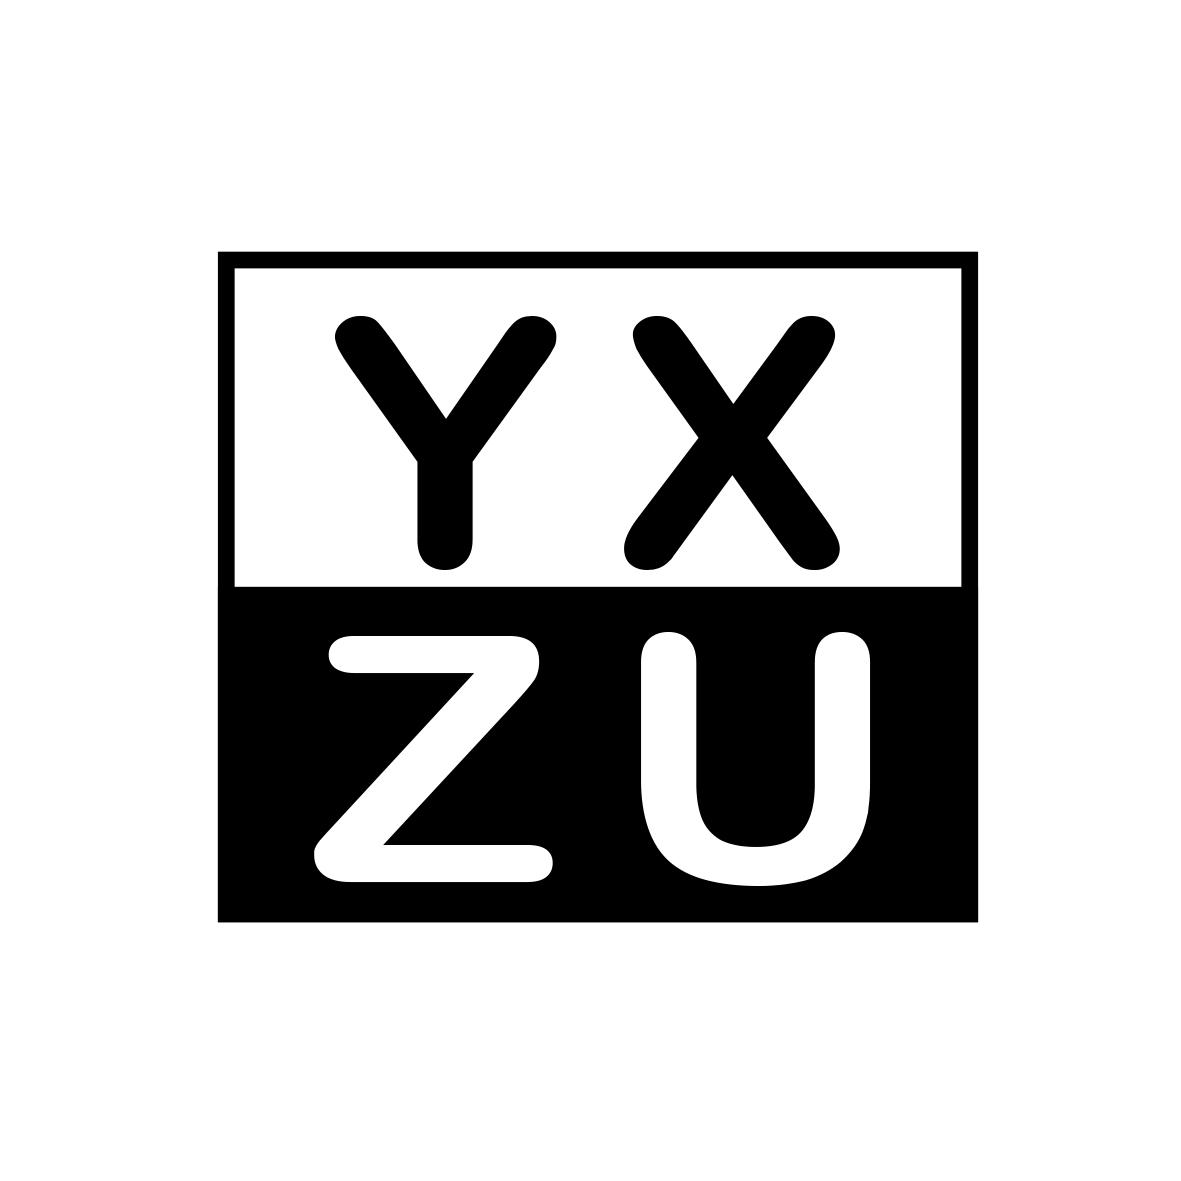 YXZU商标转让